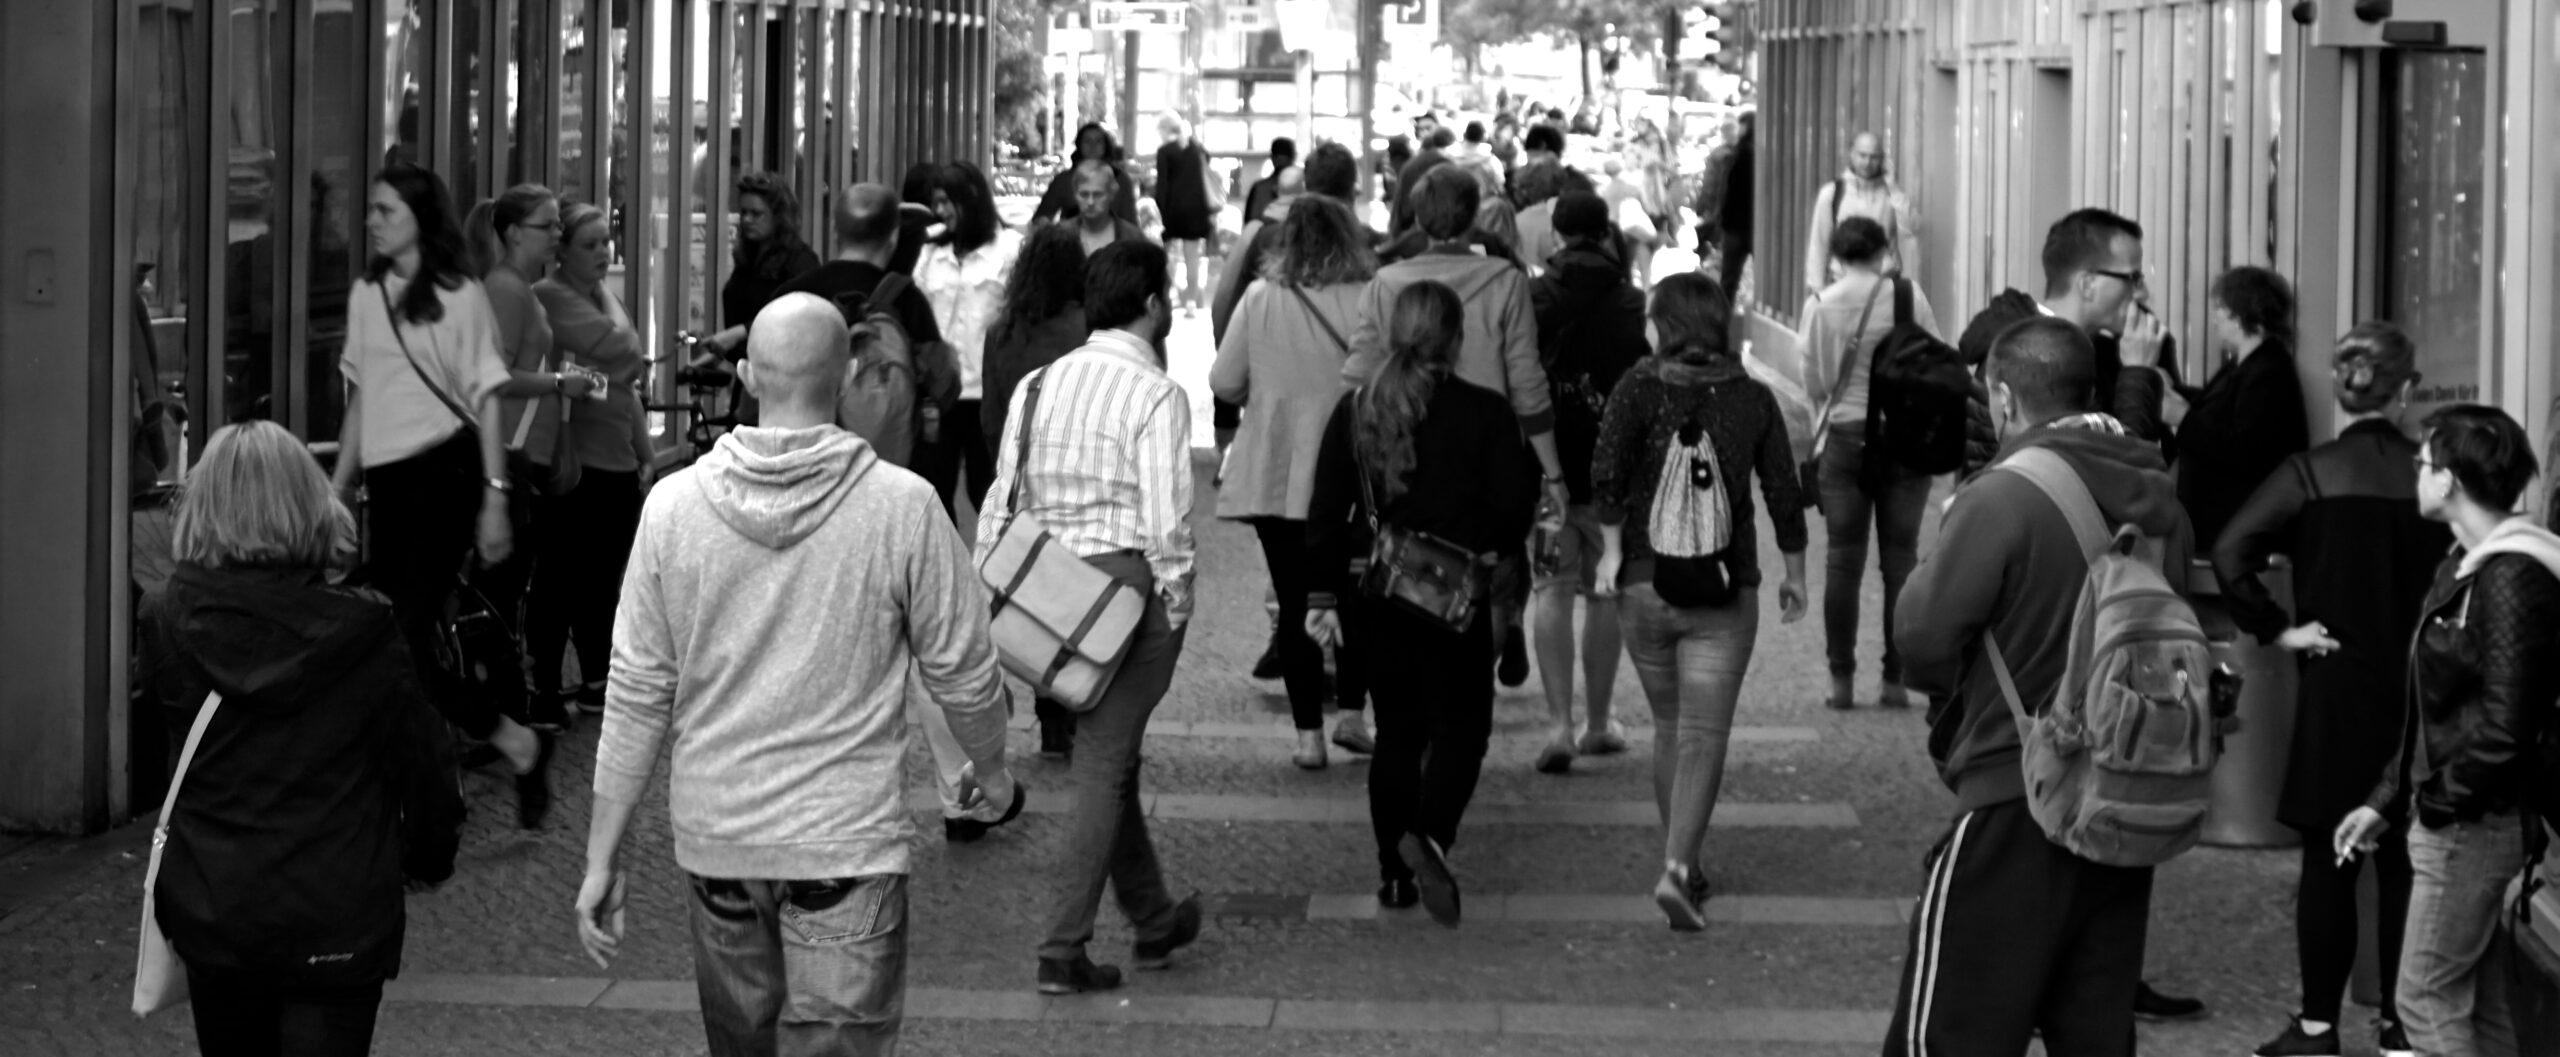 Popolazione folla gente per strada foto in bianco e nero popolazione demografia